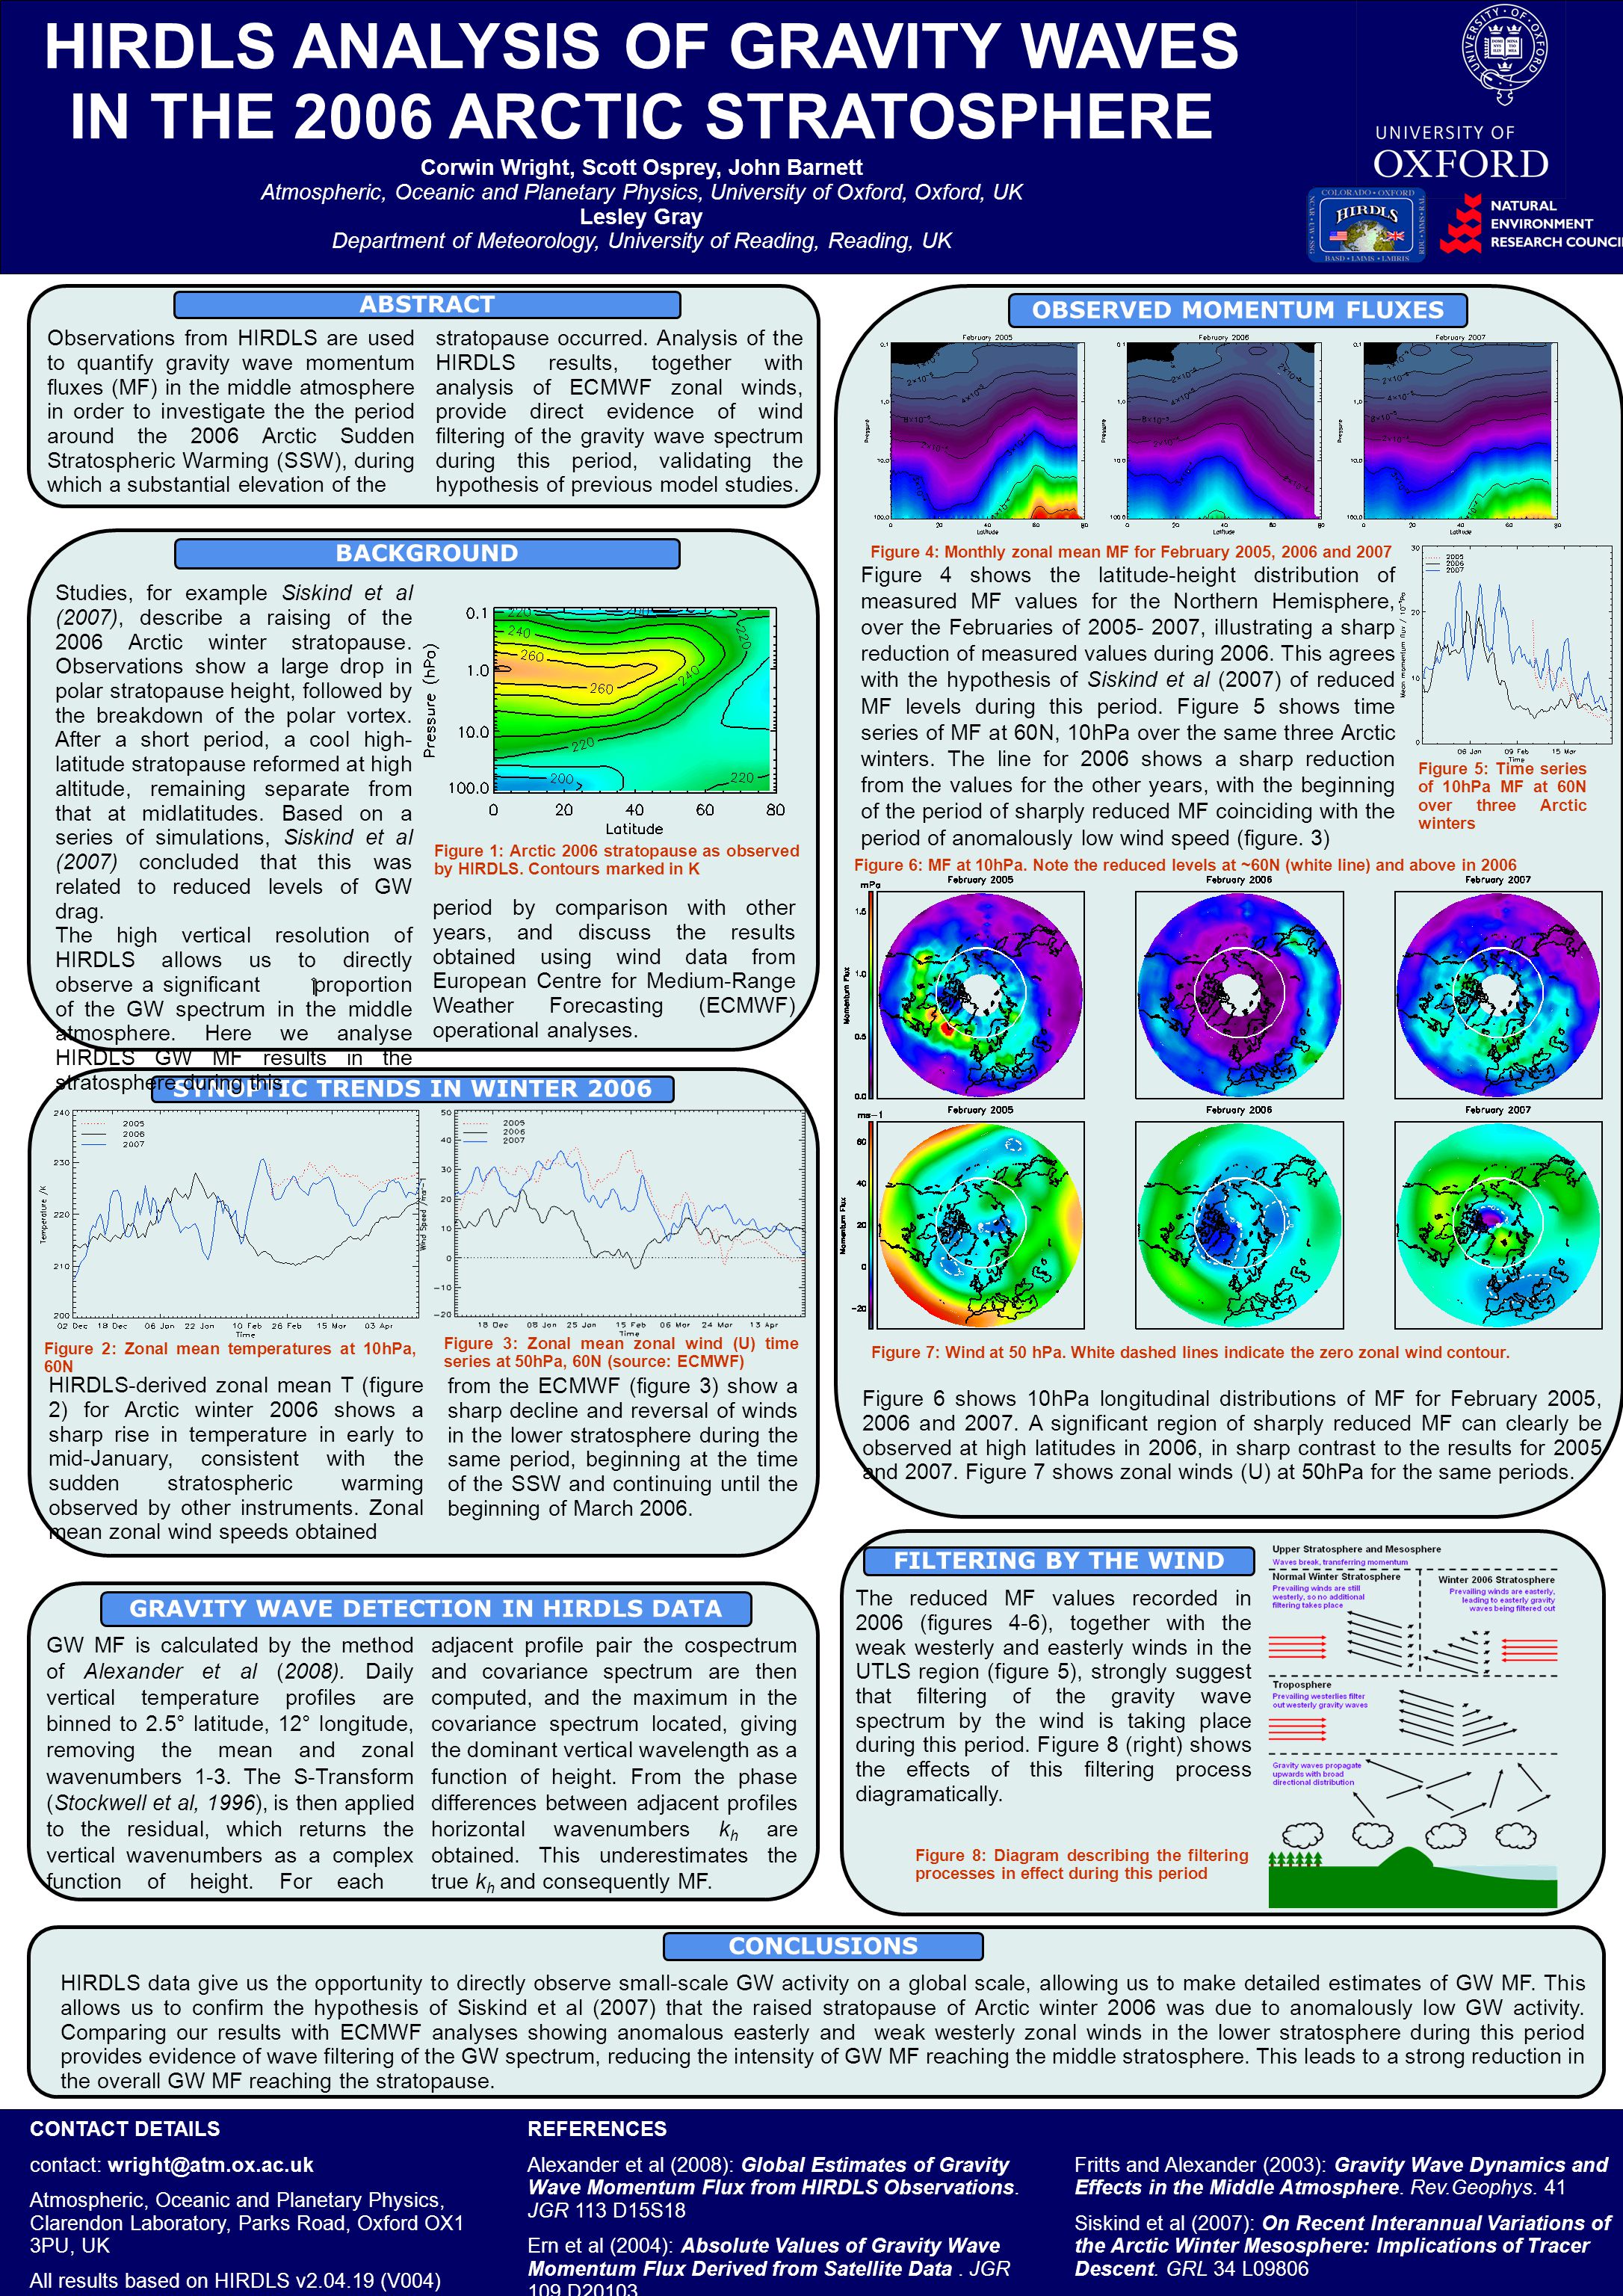 REFERENCES Alexander et al (2008): Global Estimates of Gravity Wave Momentum Flux from HIRDLS Observations.